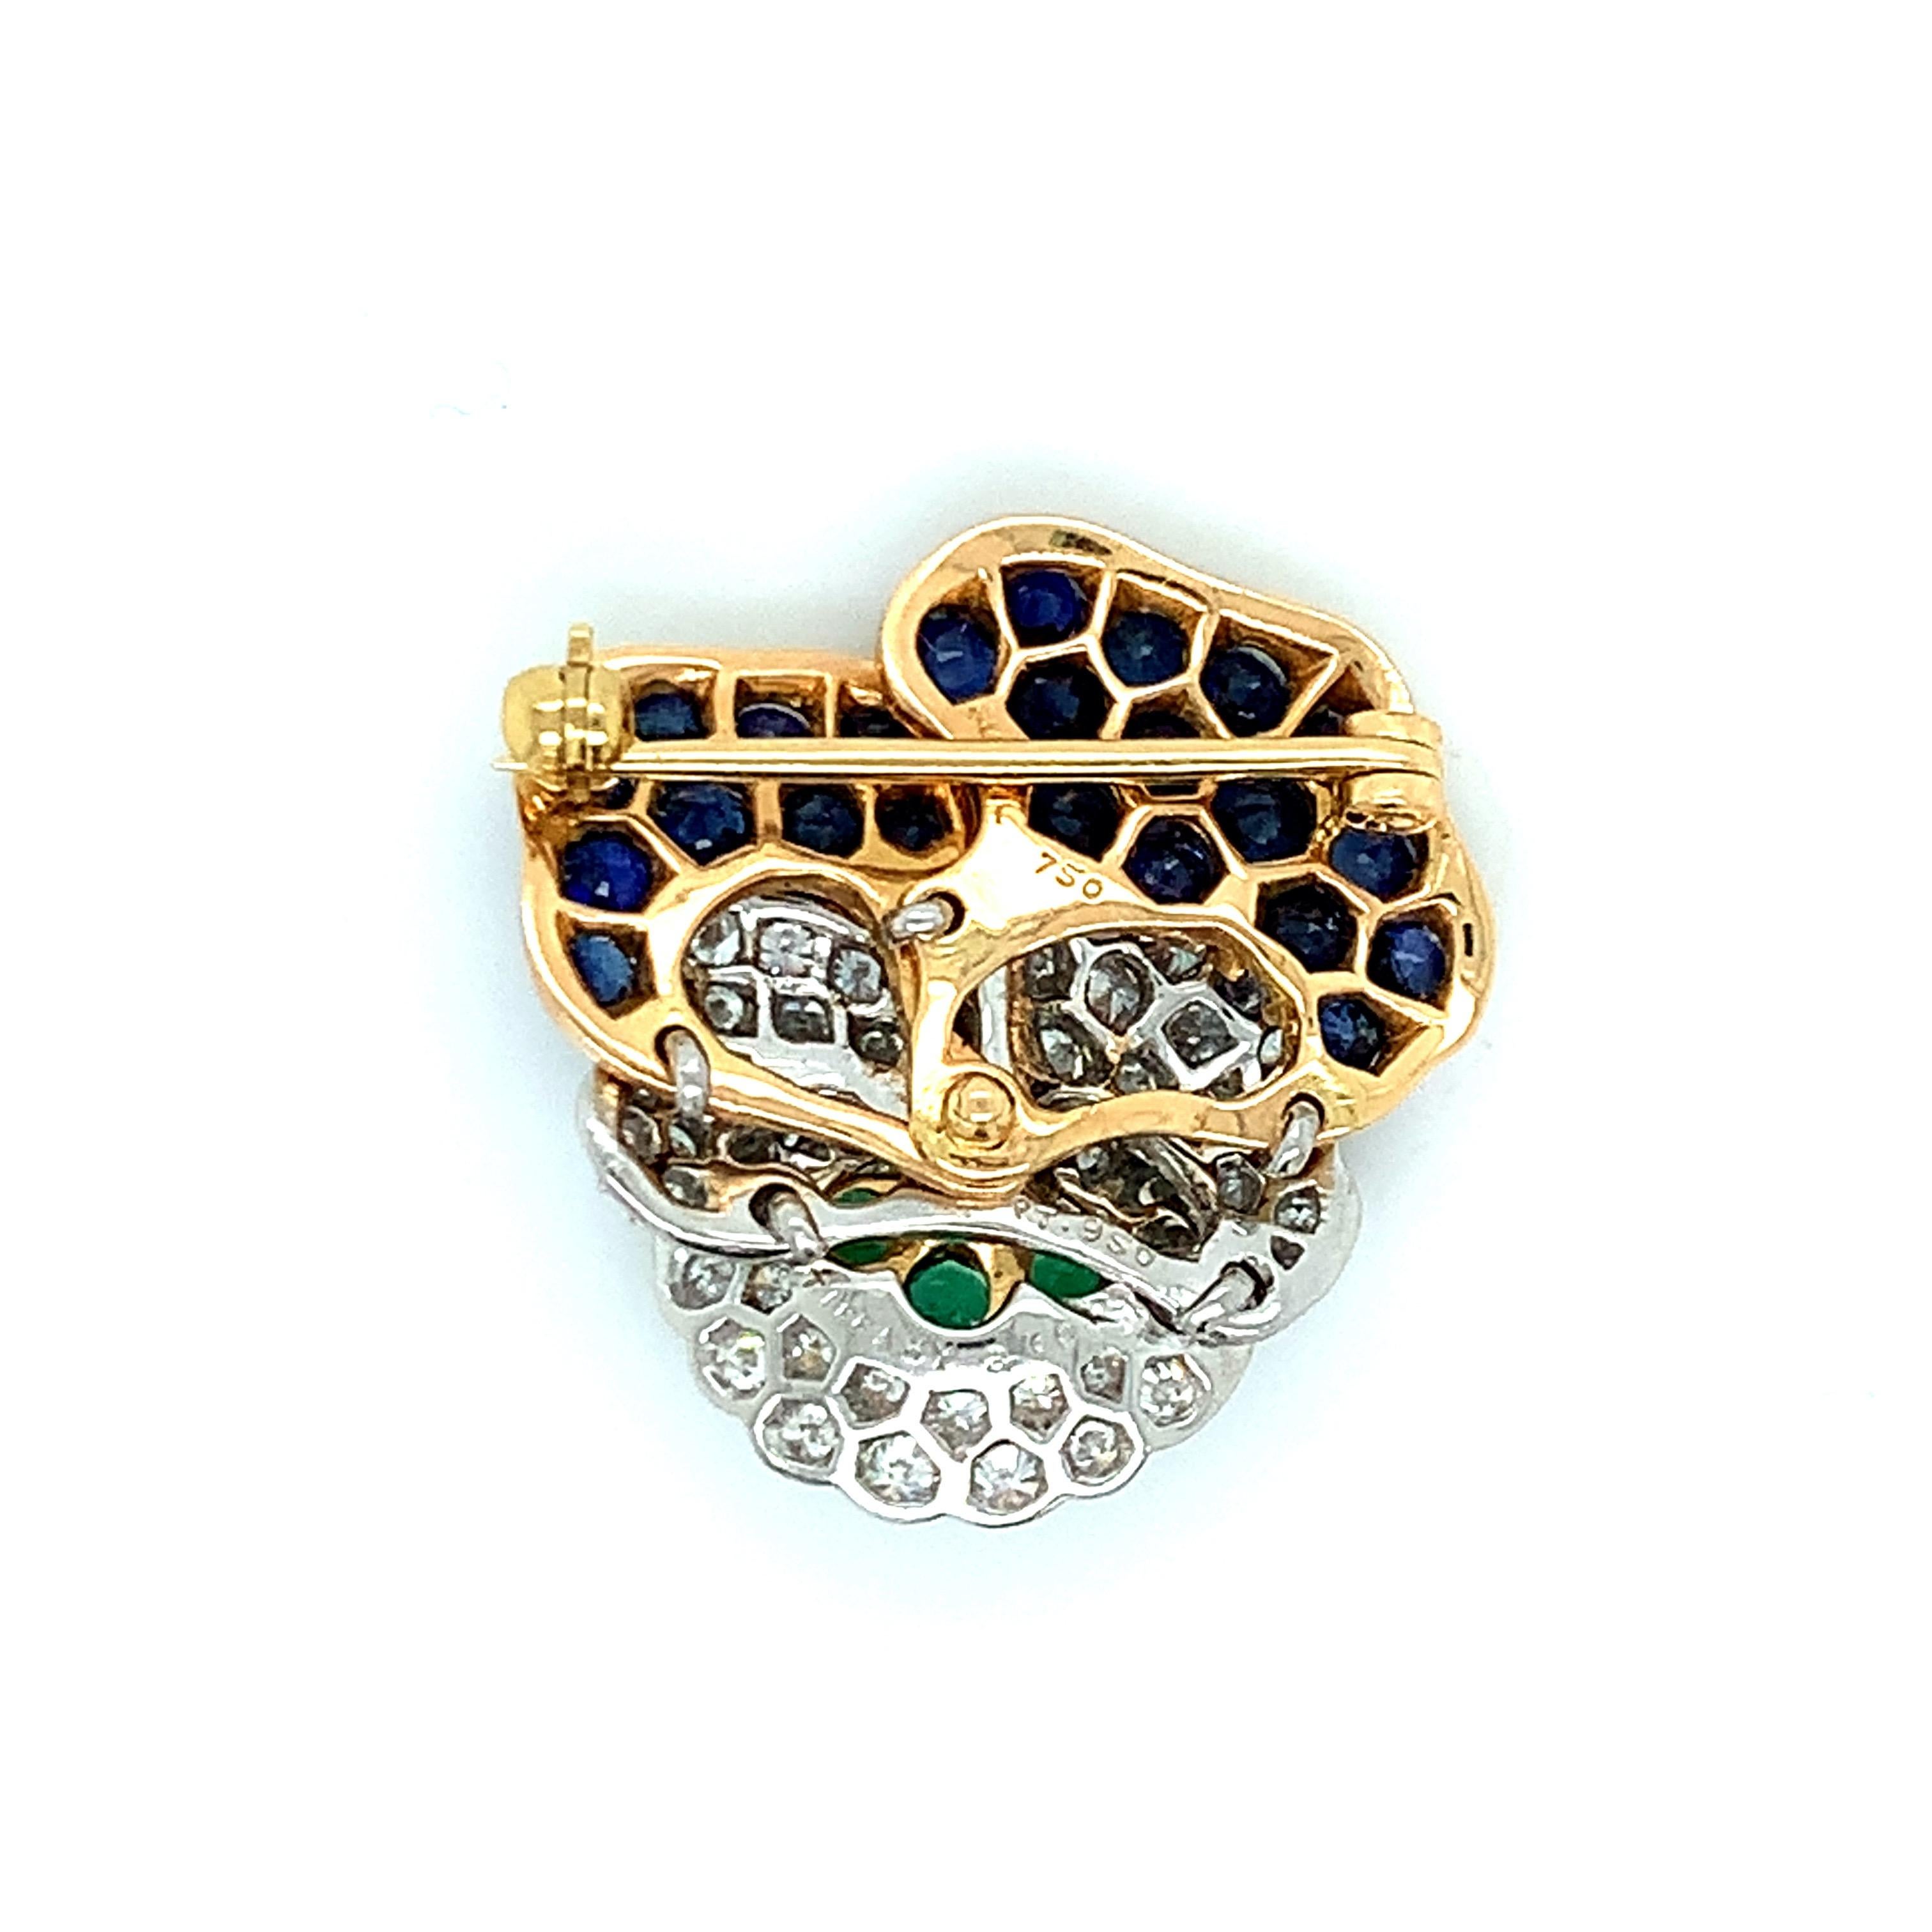 Broche emblématique en forme de fleur de pensée de Tiffany & Co, sertie d'or 18k et de platine, mettant en valeur des émeraudes, des saphirs bleus et environ 1,00ctw de diamants G/VS. La broche mesure 1